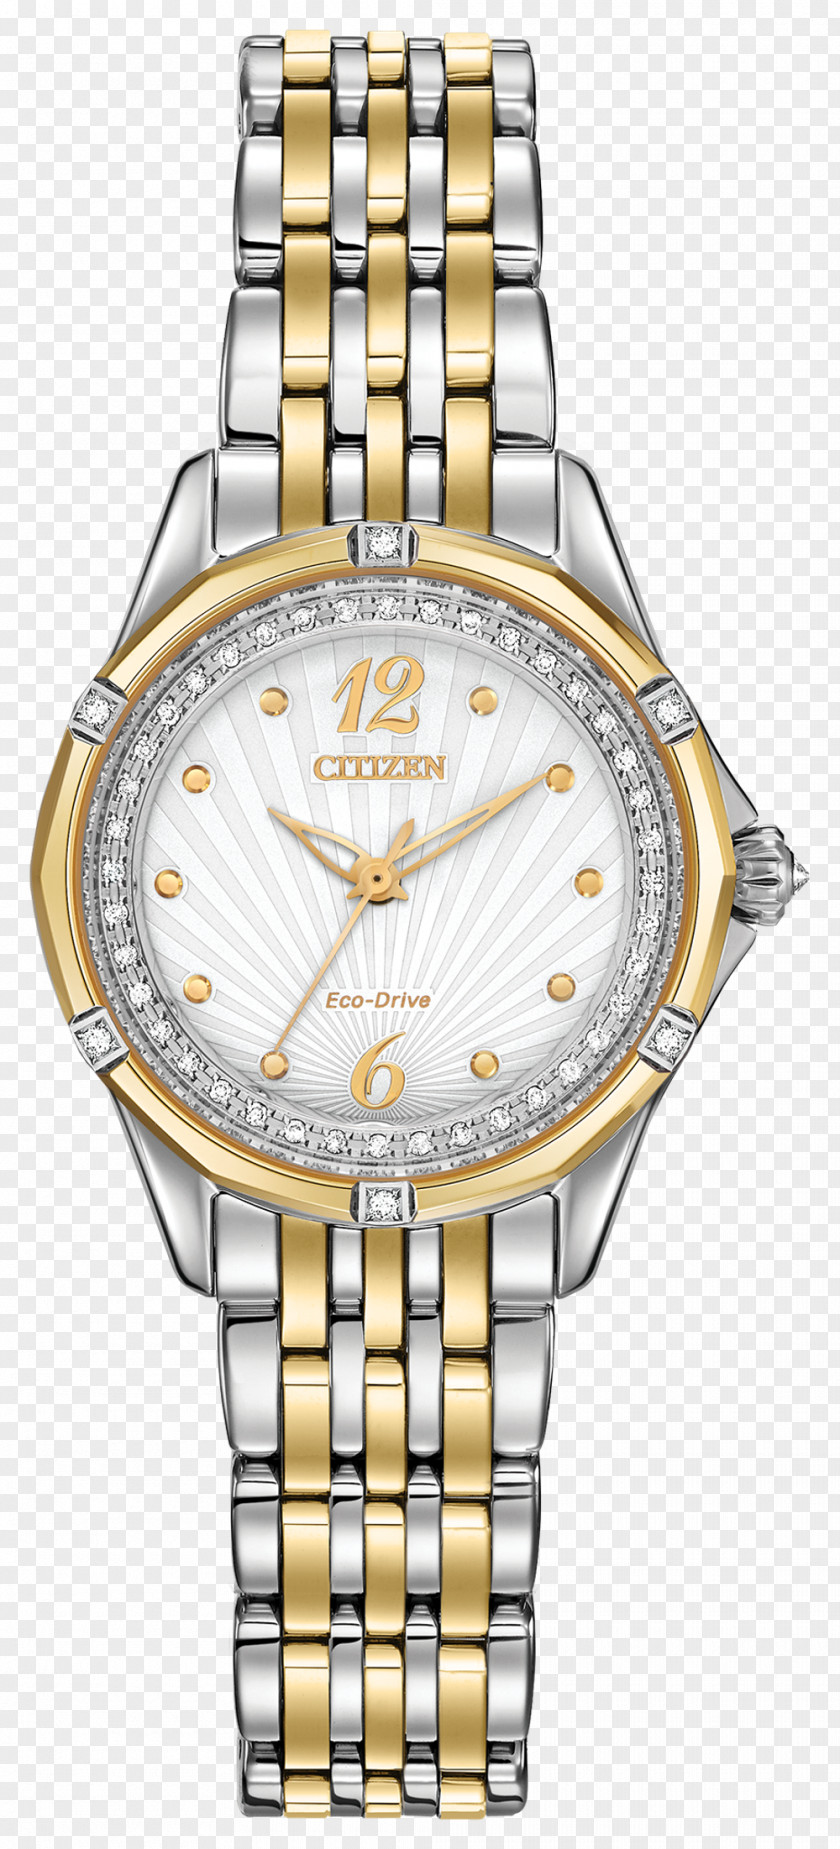 Watch Eco-Drive Citizen Holdings Bracelet Clock PNG